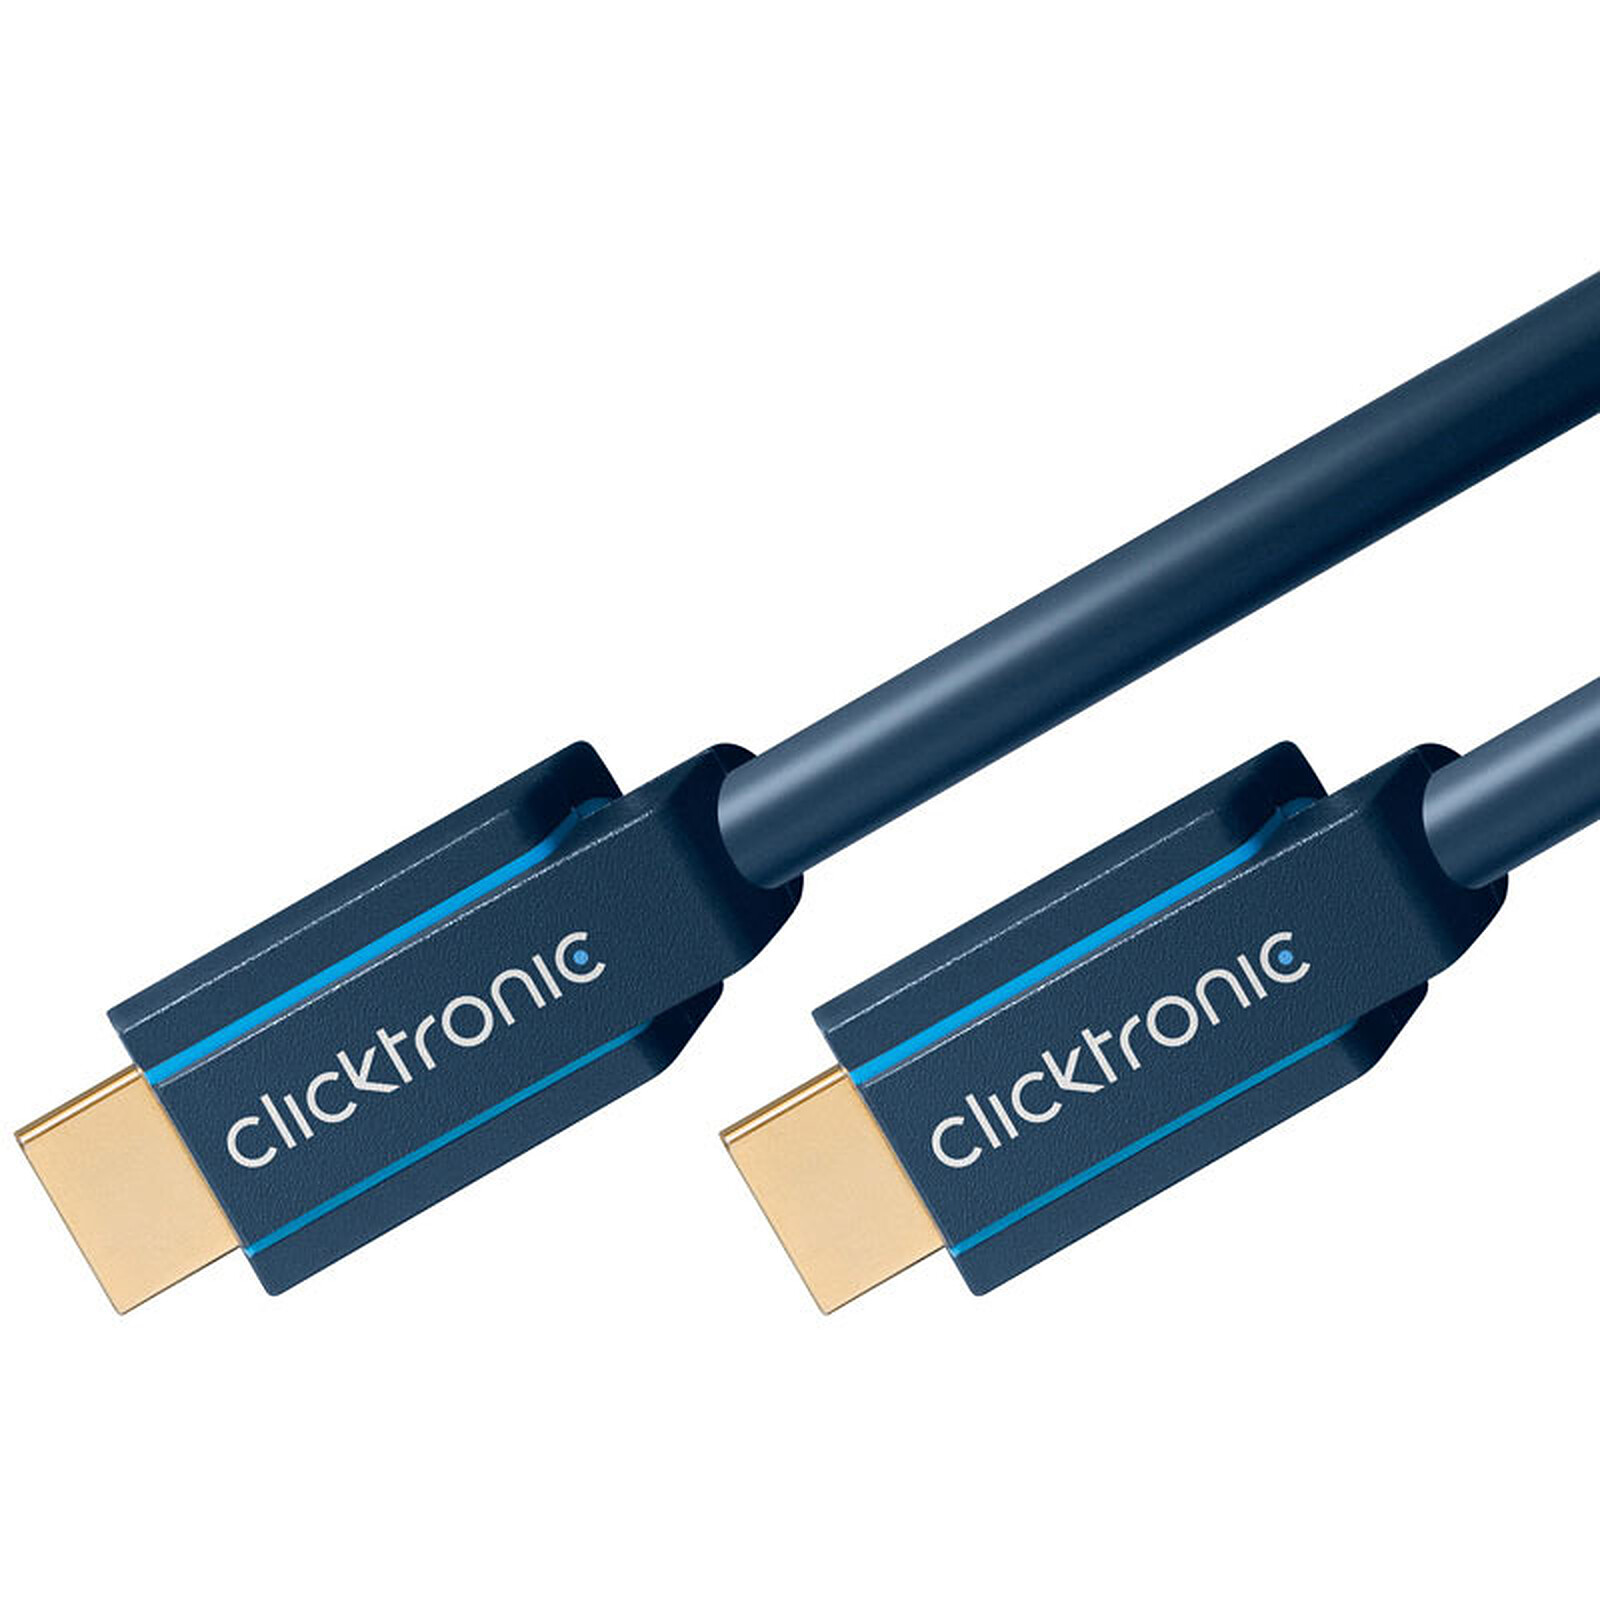 Cable adaptador DisplayPort / HDMI 2.0 activo Clicktronic (5 metros) - HDMI  - LDLC